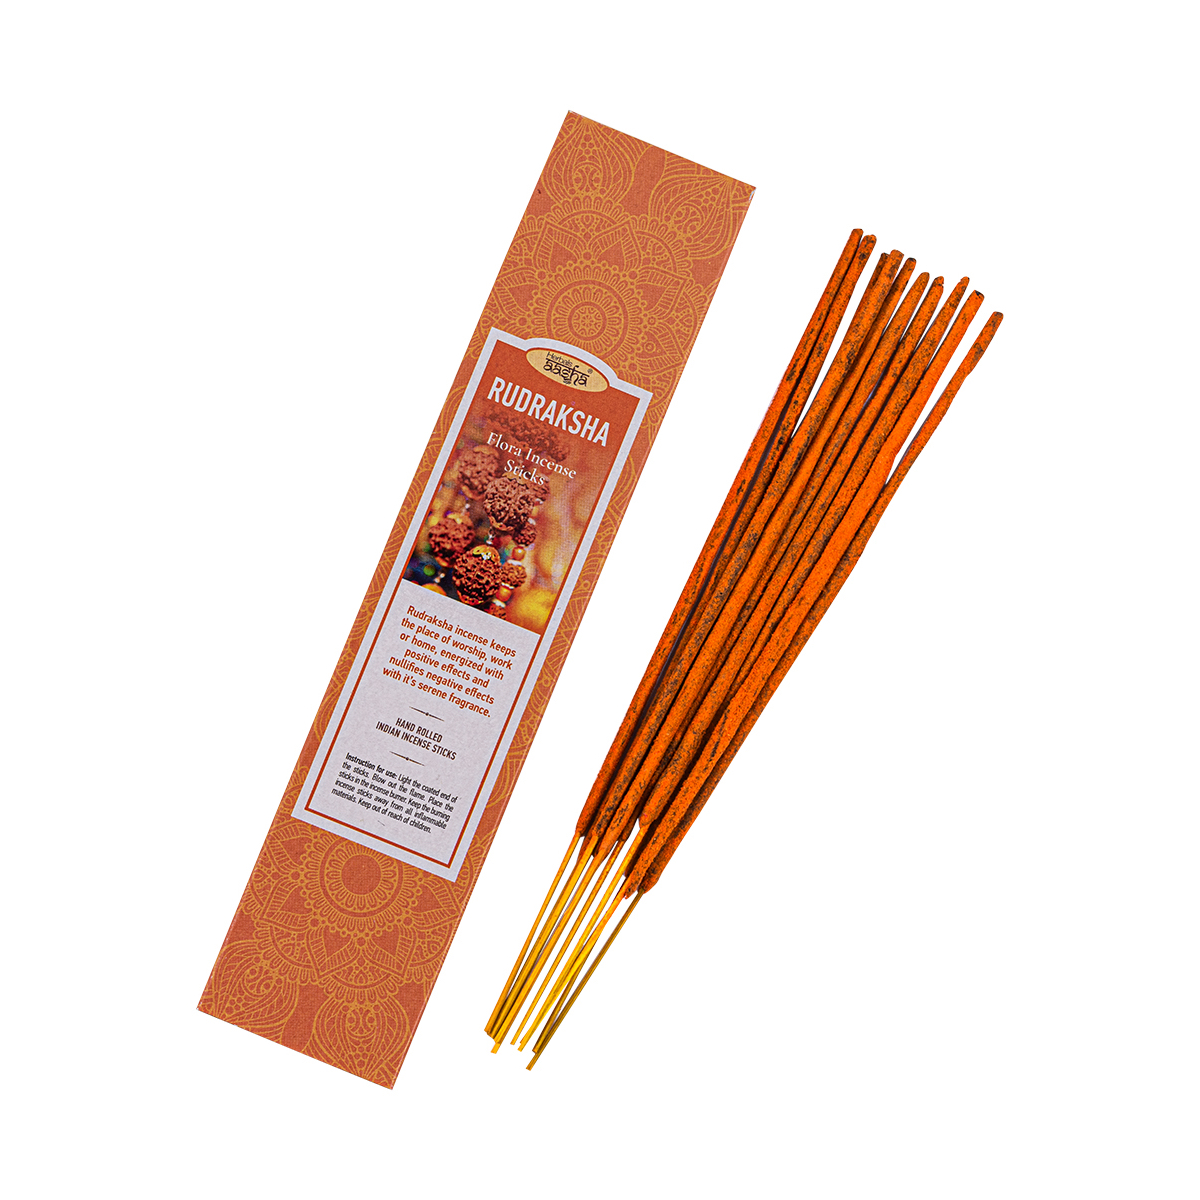 Ароматические палочки Aasha Herbals  Рудракша (Rudraksha), 10 шт крабовые палочки vici охлажденные 220 гр